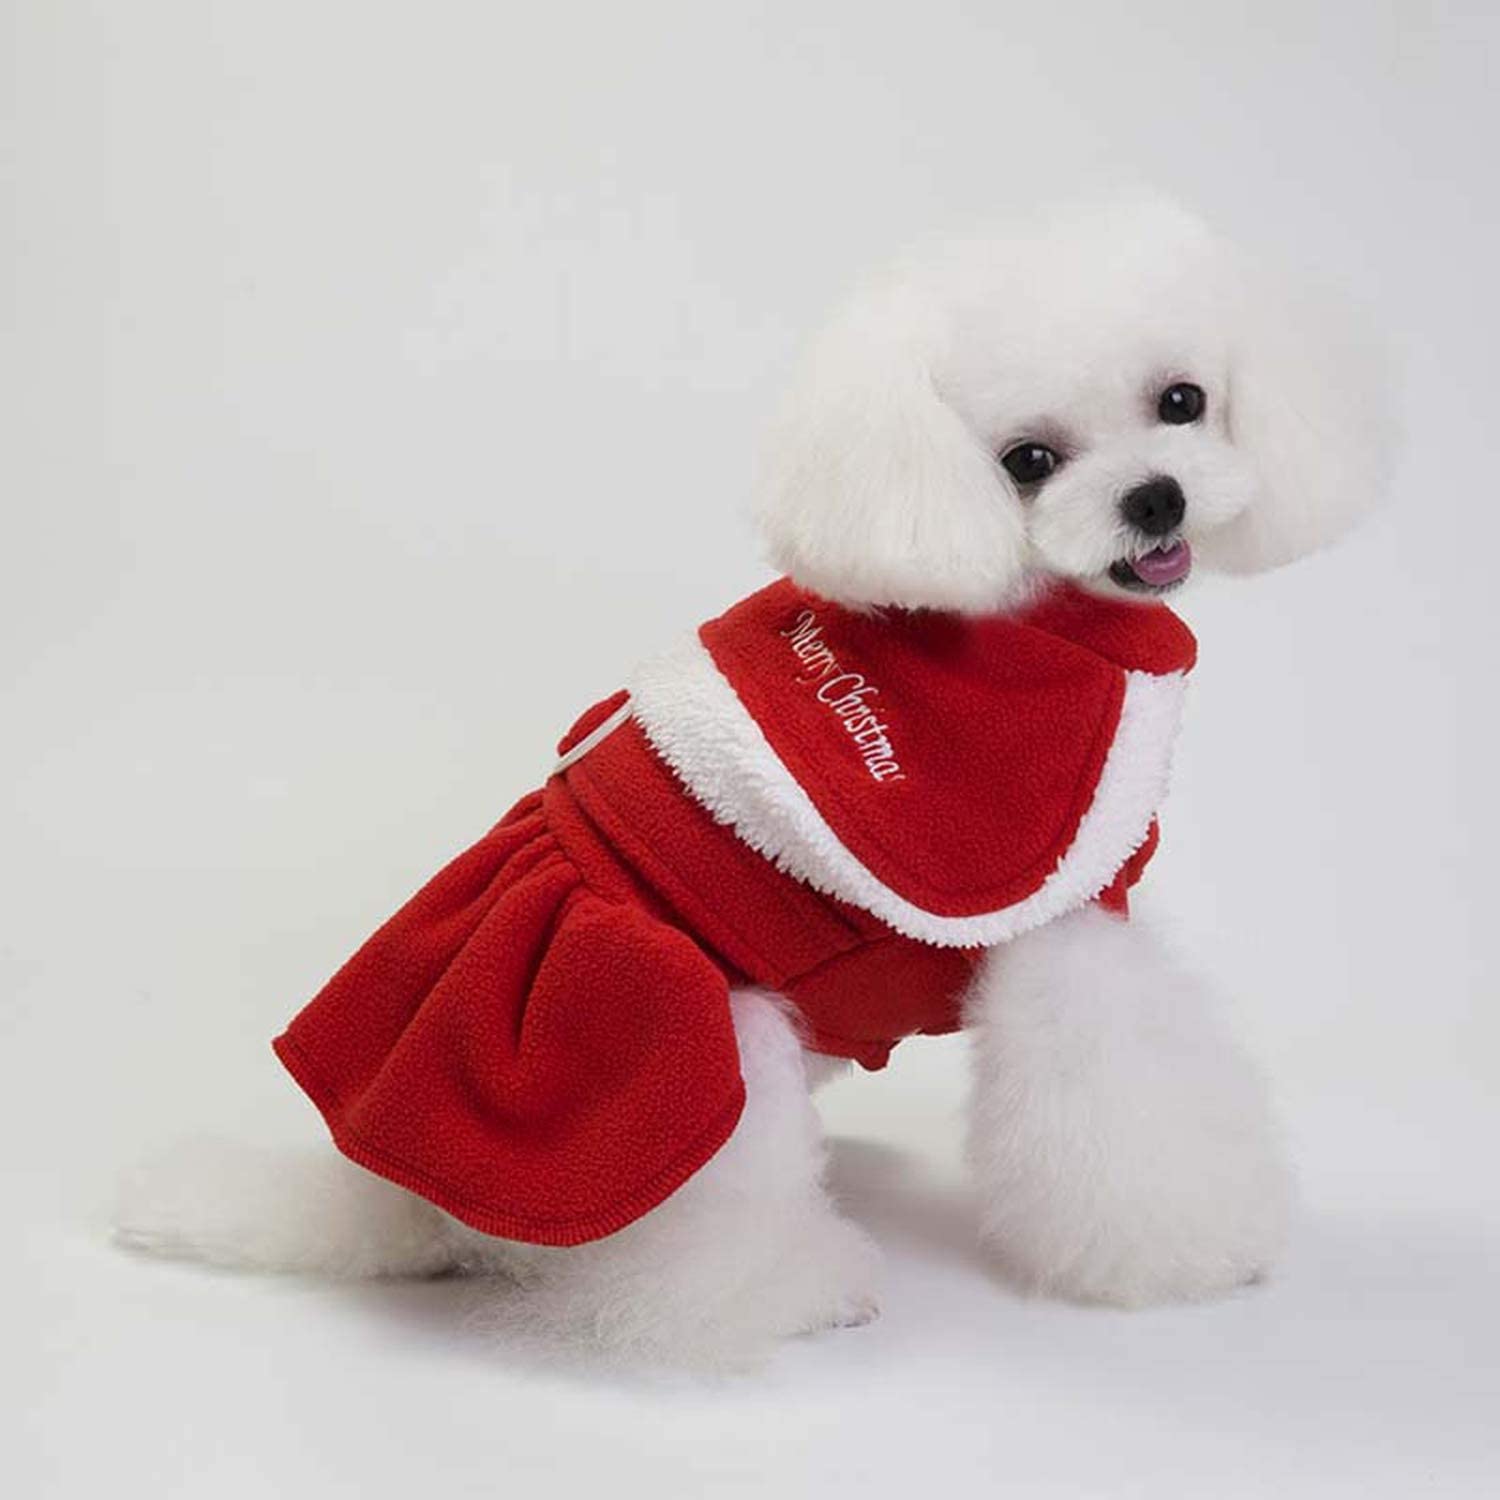  NA Ropa de Navidad para Perros cálidos Vestido y Abrigo Ropa para Cachorros Ropa para Mascotas para Perros Yorkshire Terrier Chihuahua 2 M 